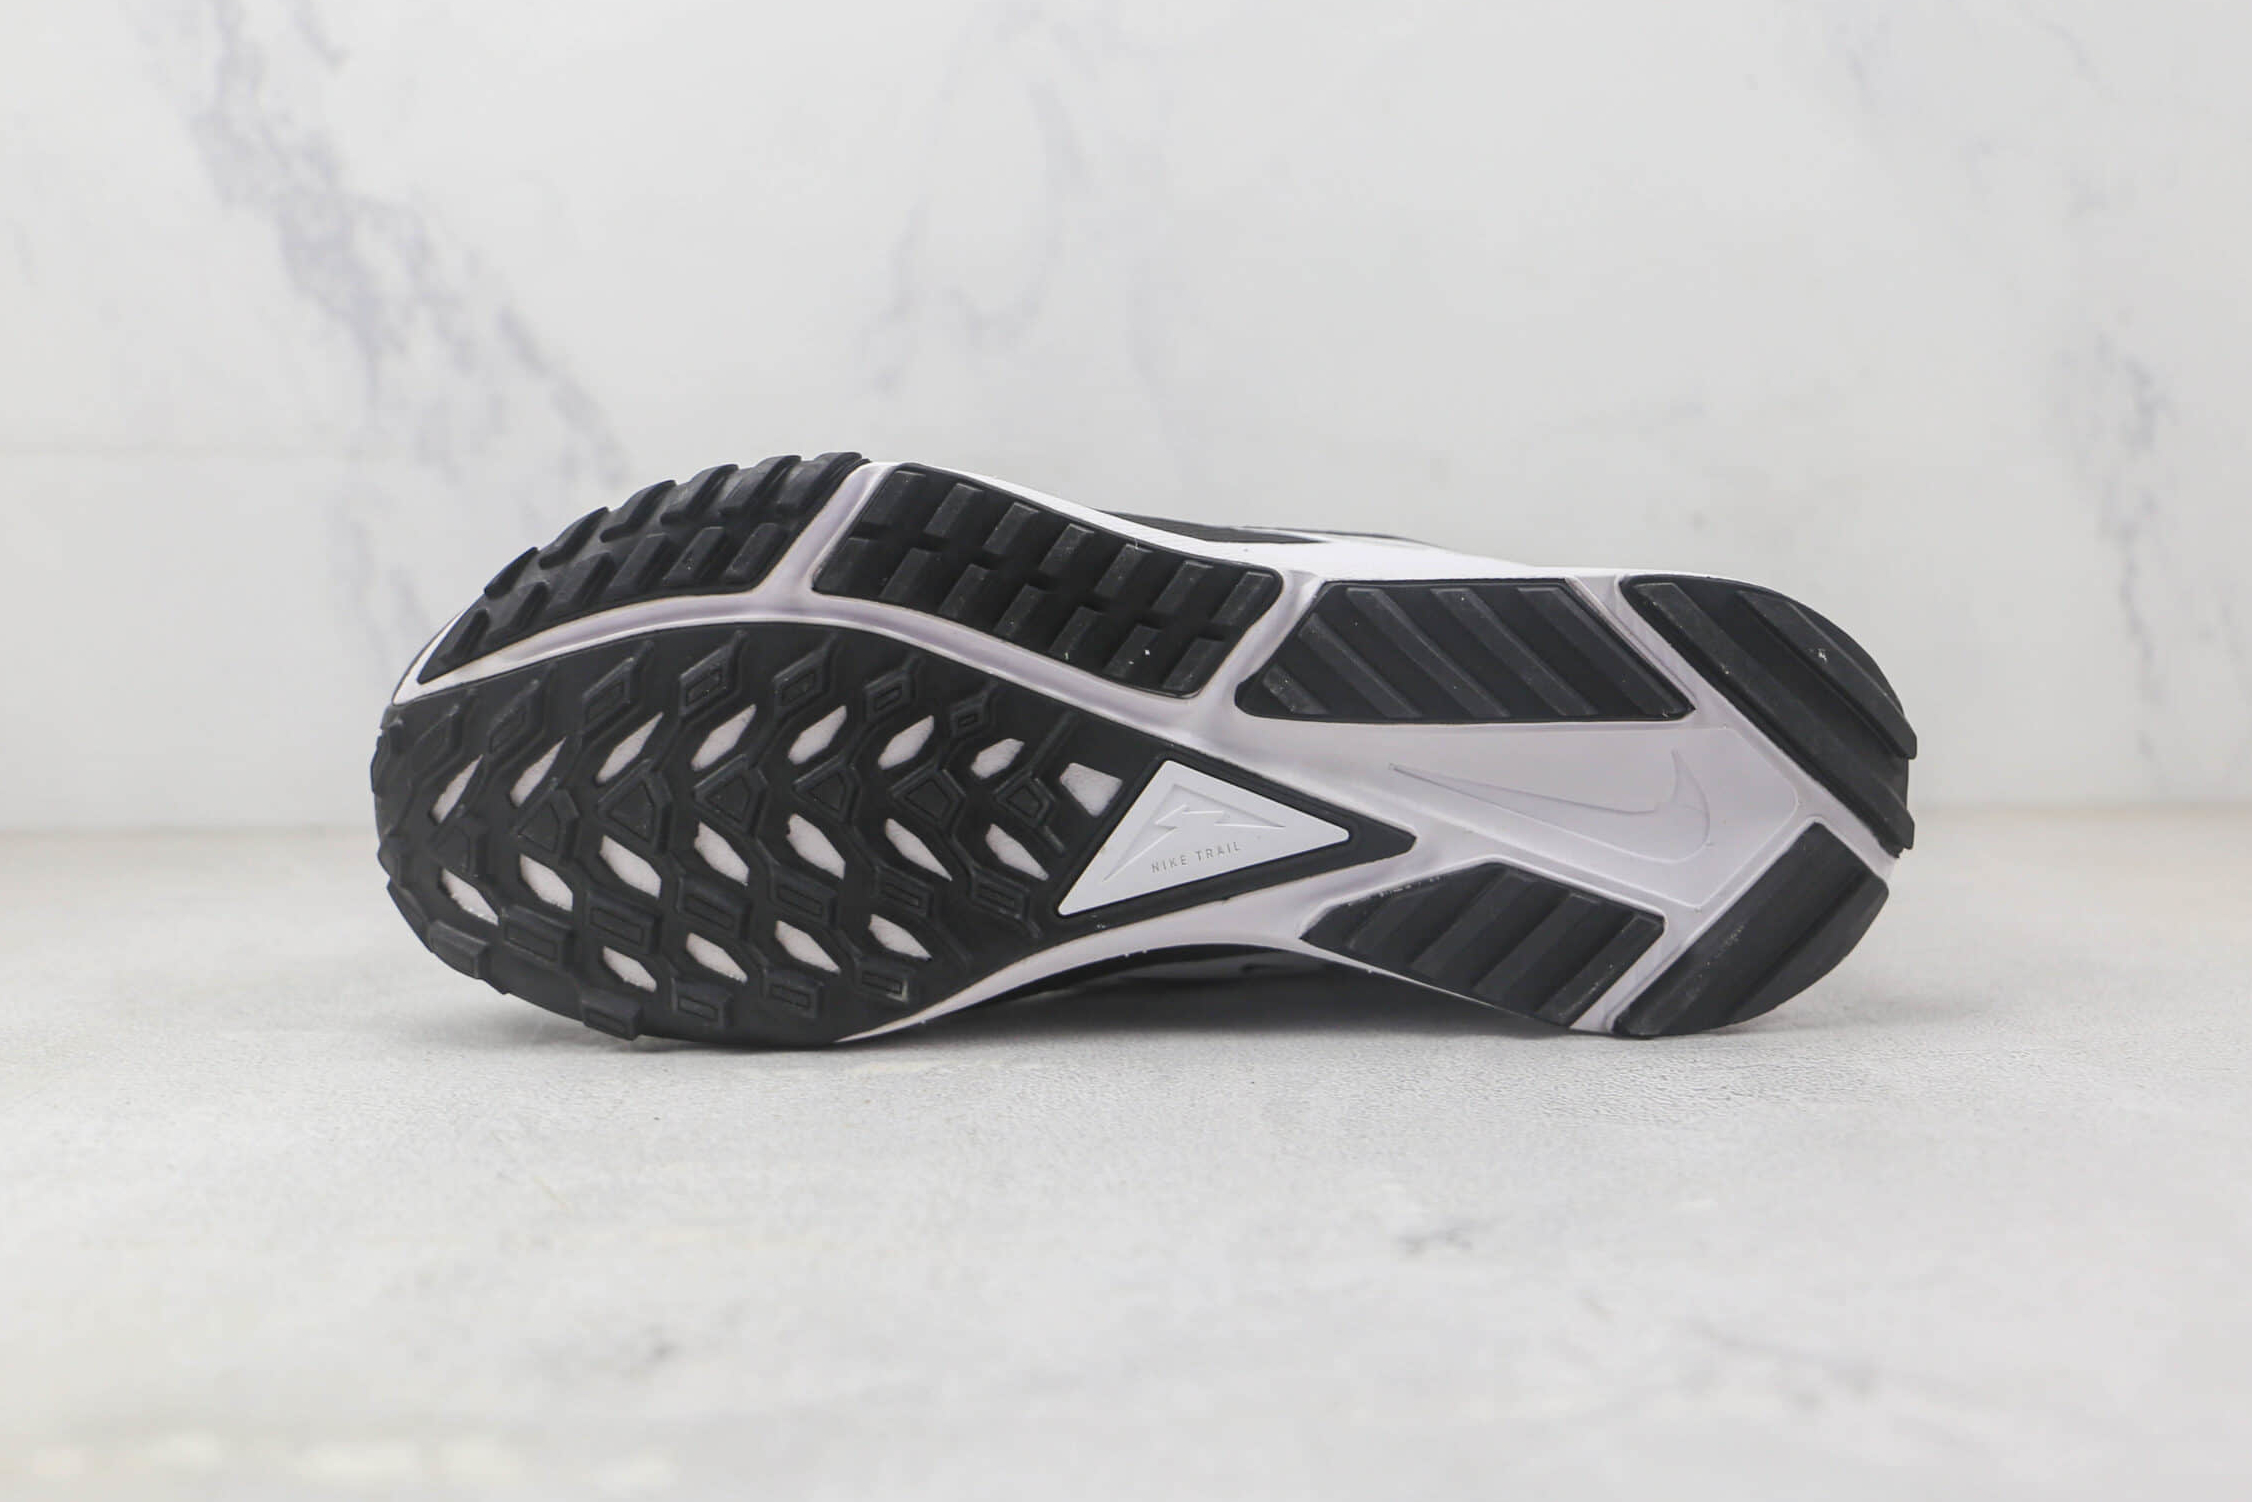 Nike Fabric React Pegasus Trial 4 Sneakers - Premium Comfort and Durability